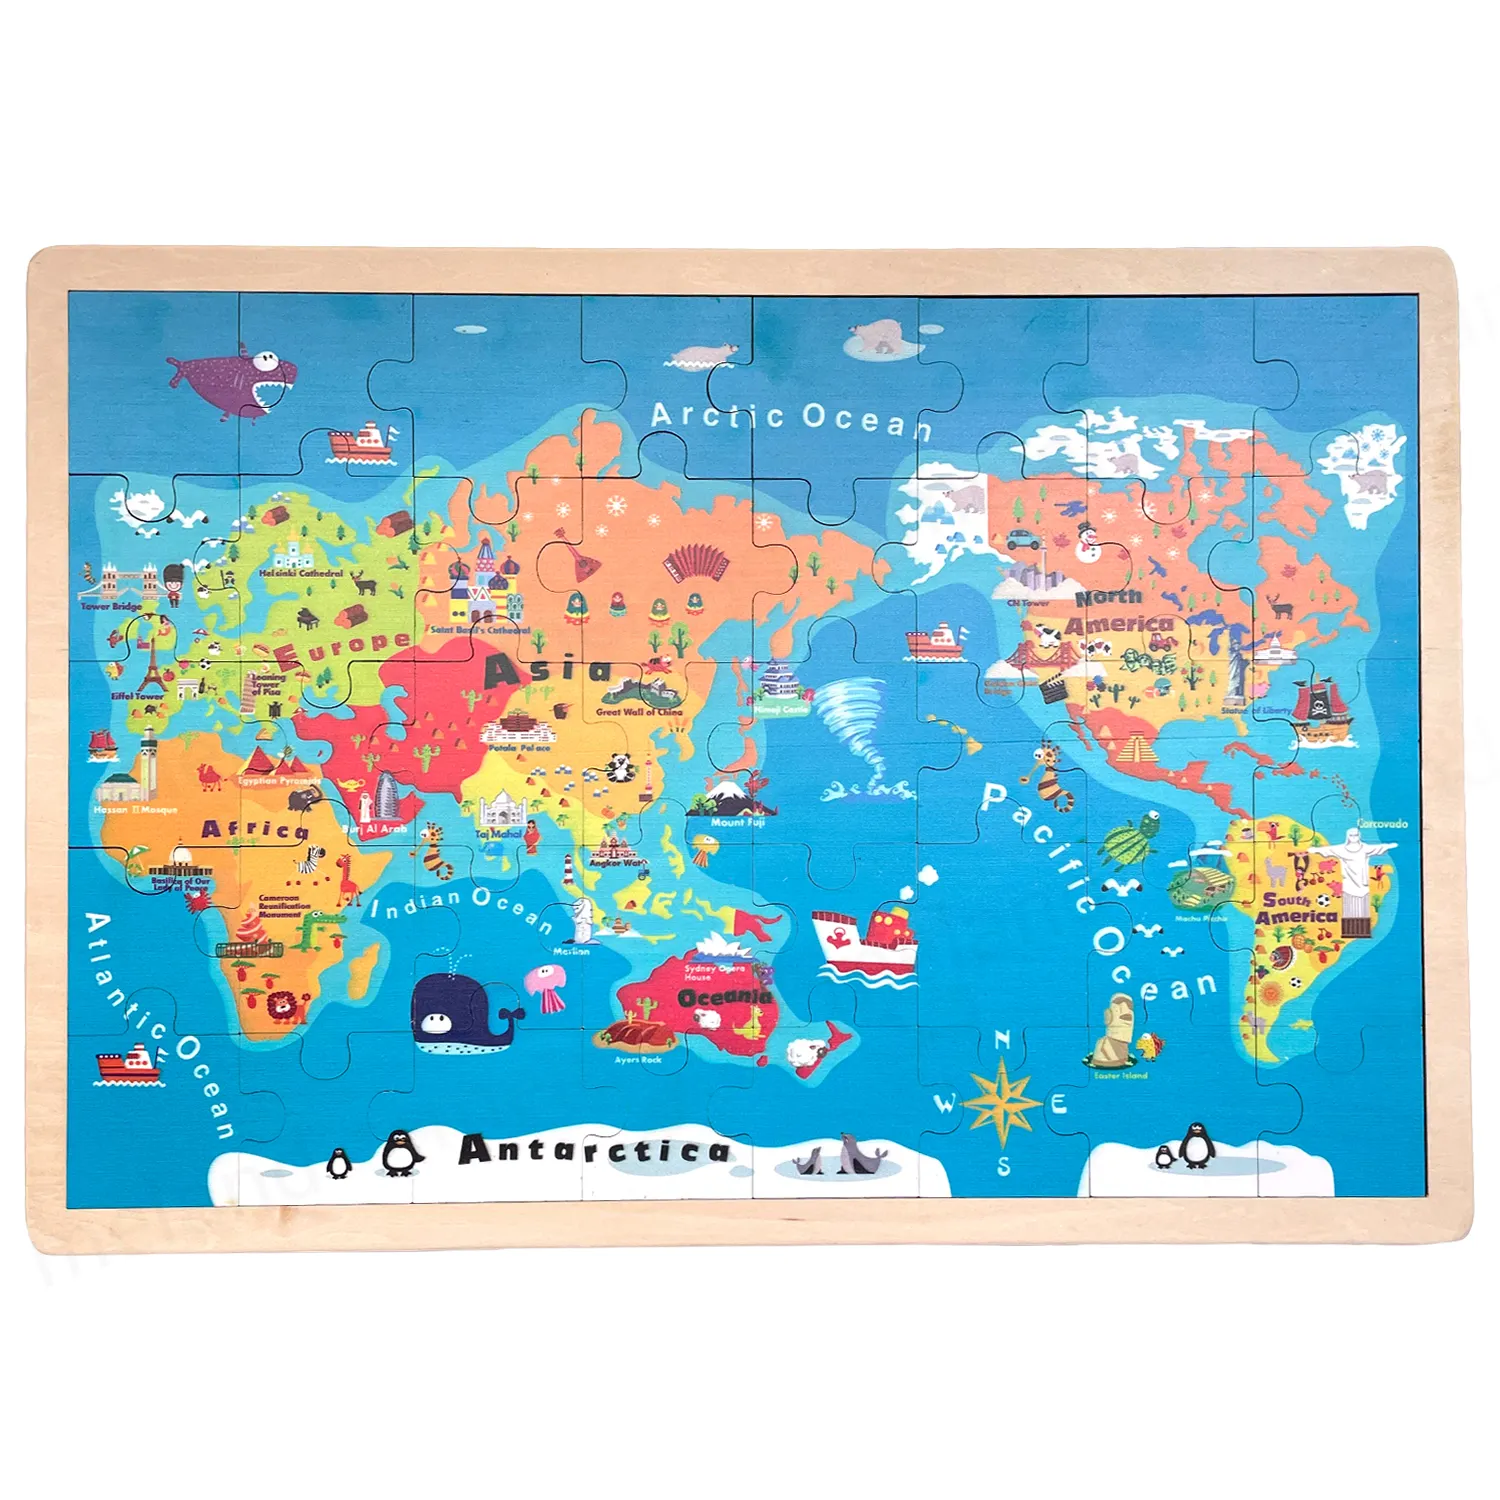 Pädagogische Reises piele Weltkarte Lernspiel zeug Magnetische Holz puzzles für Kinder